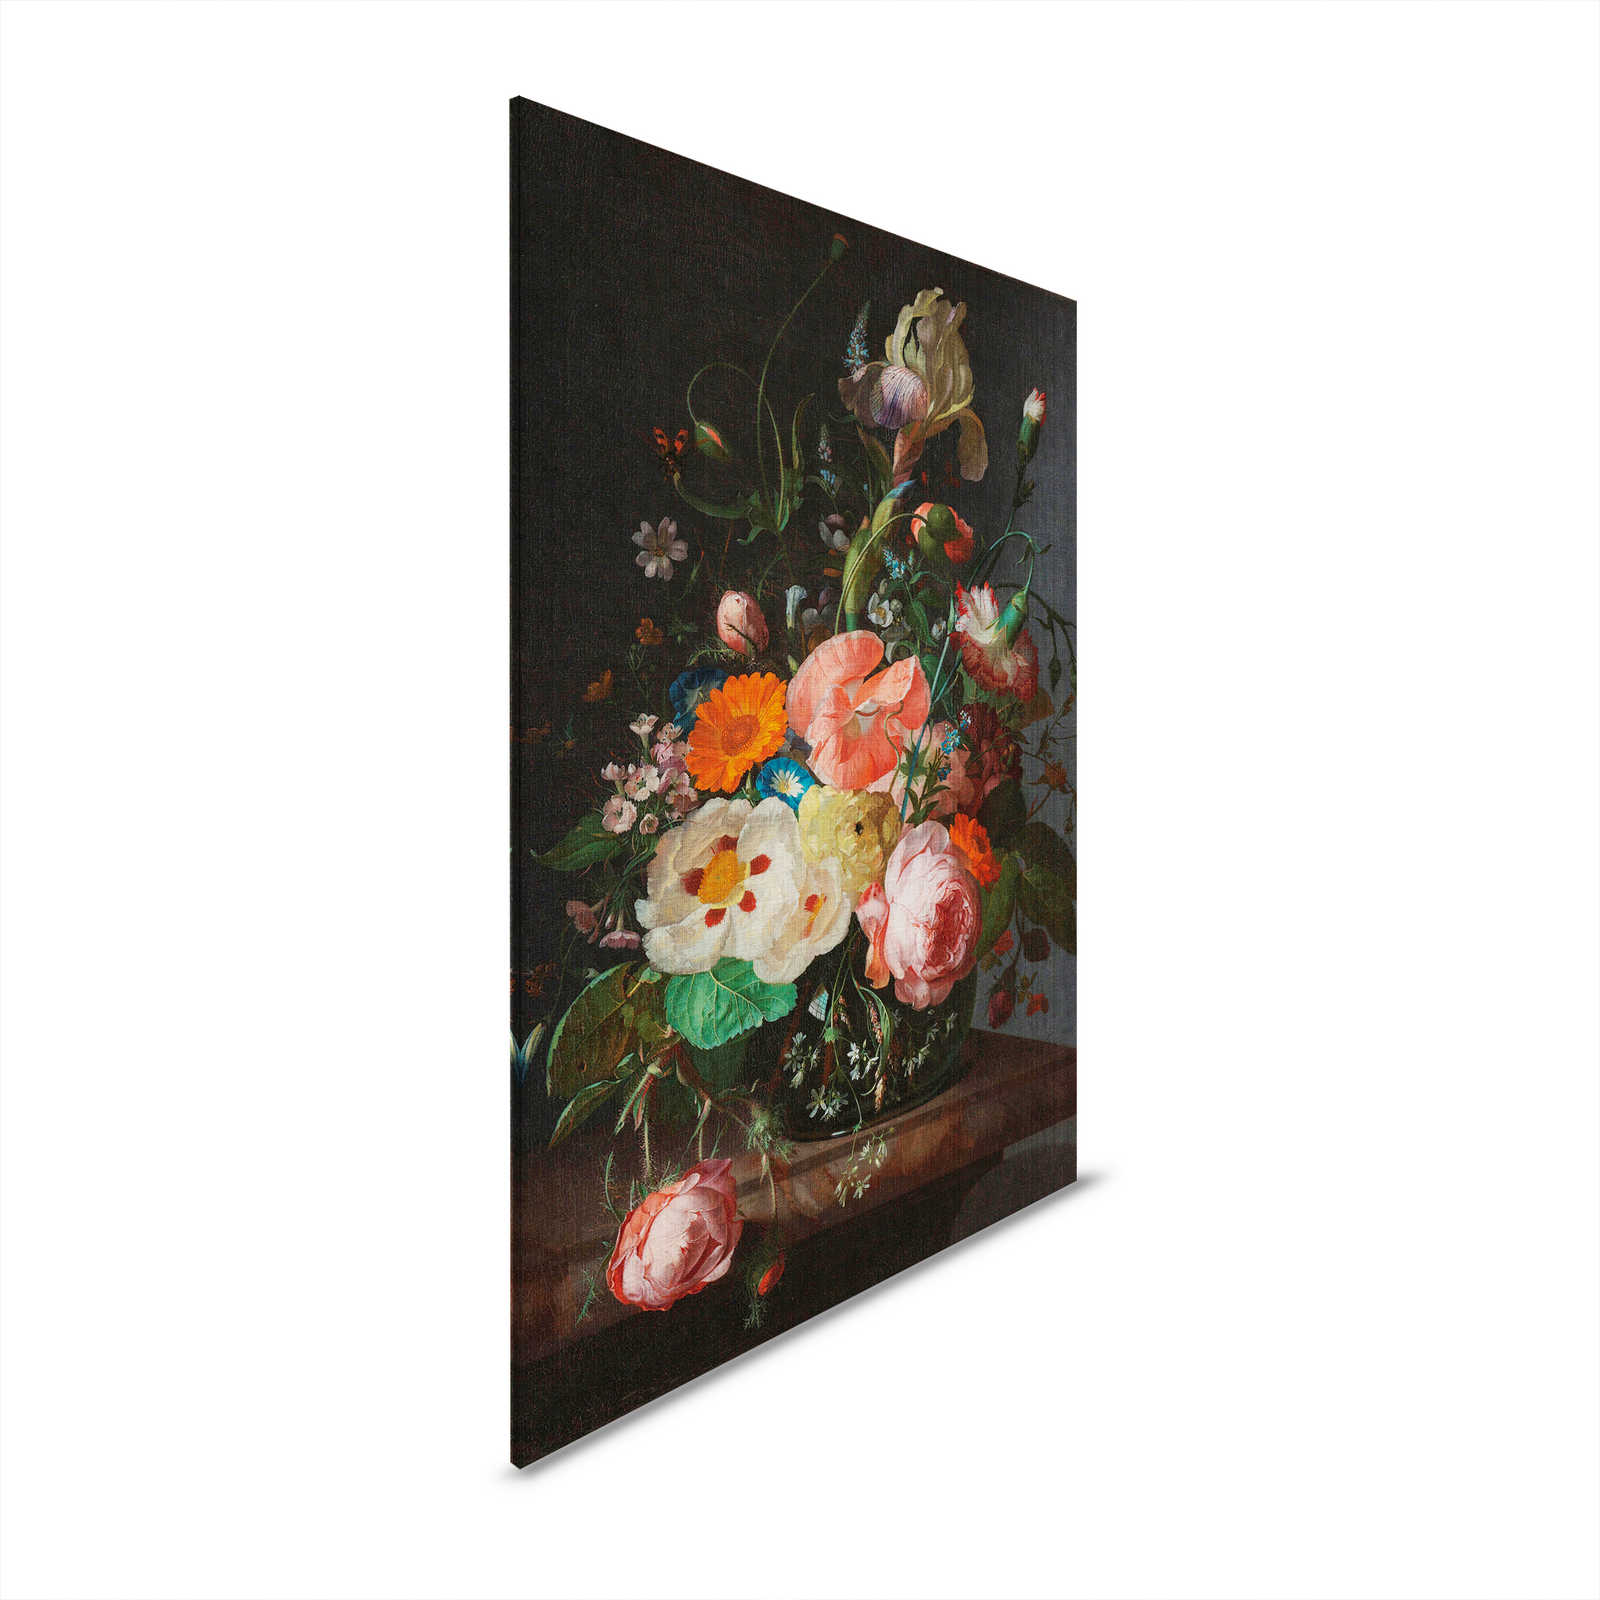 Artists Studio 3 - Bloemrijk Canvas Schilderij Stilleven - 0.80 m x 1.20 m
